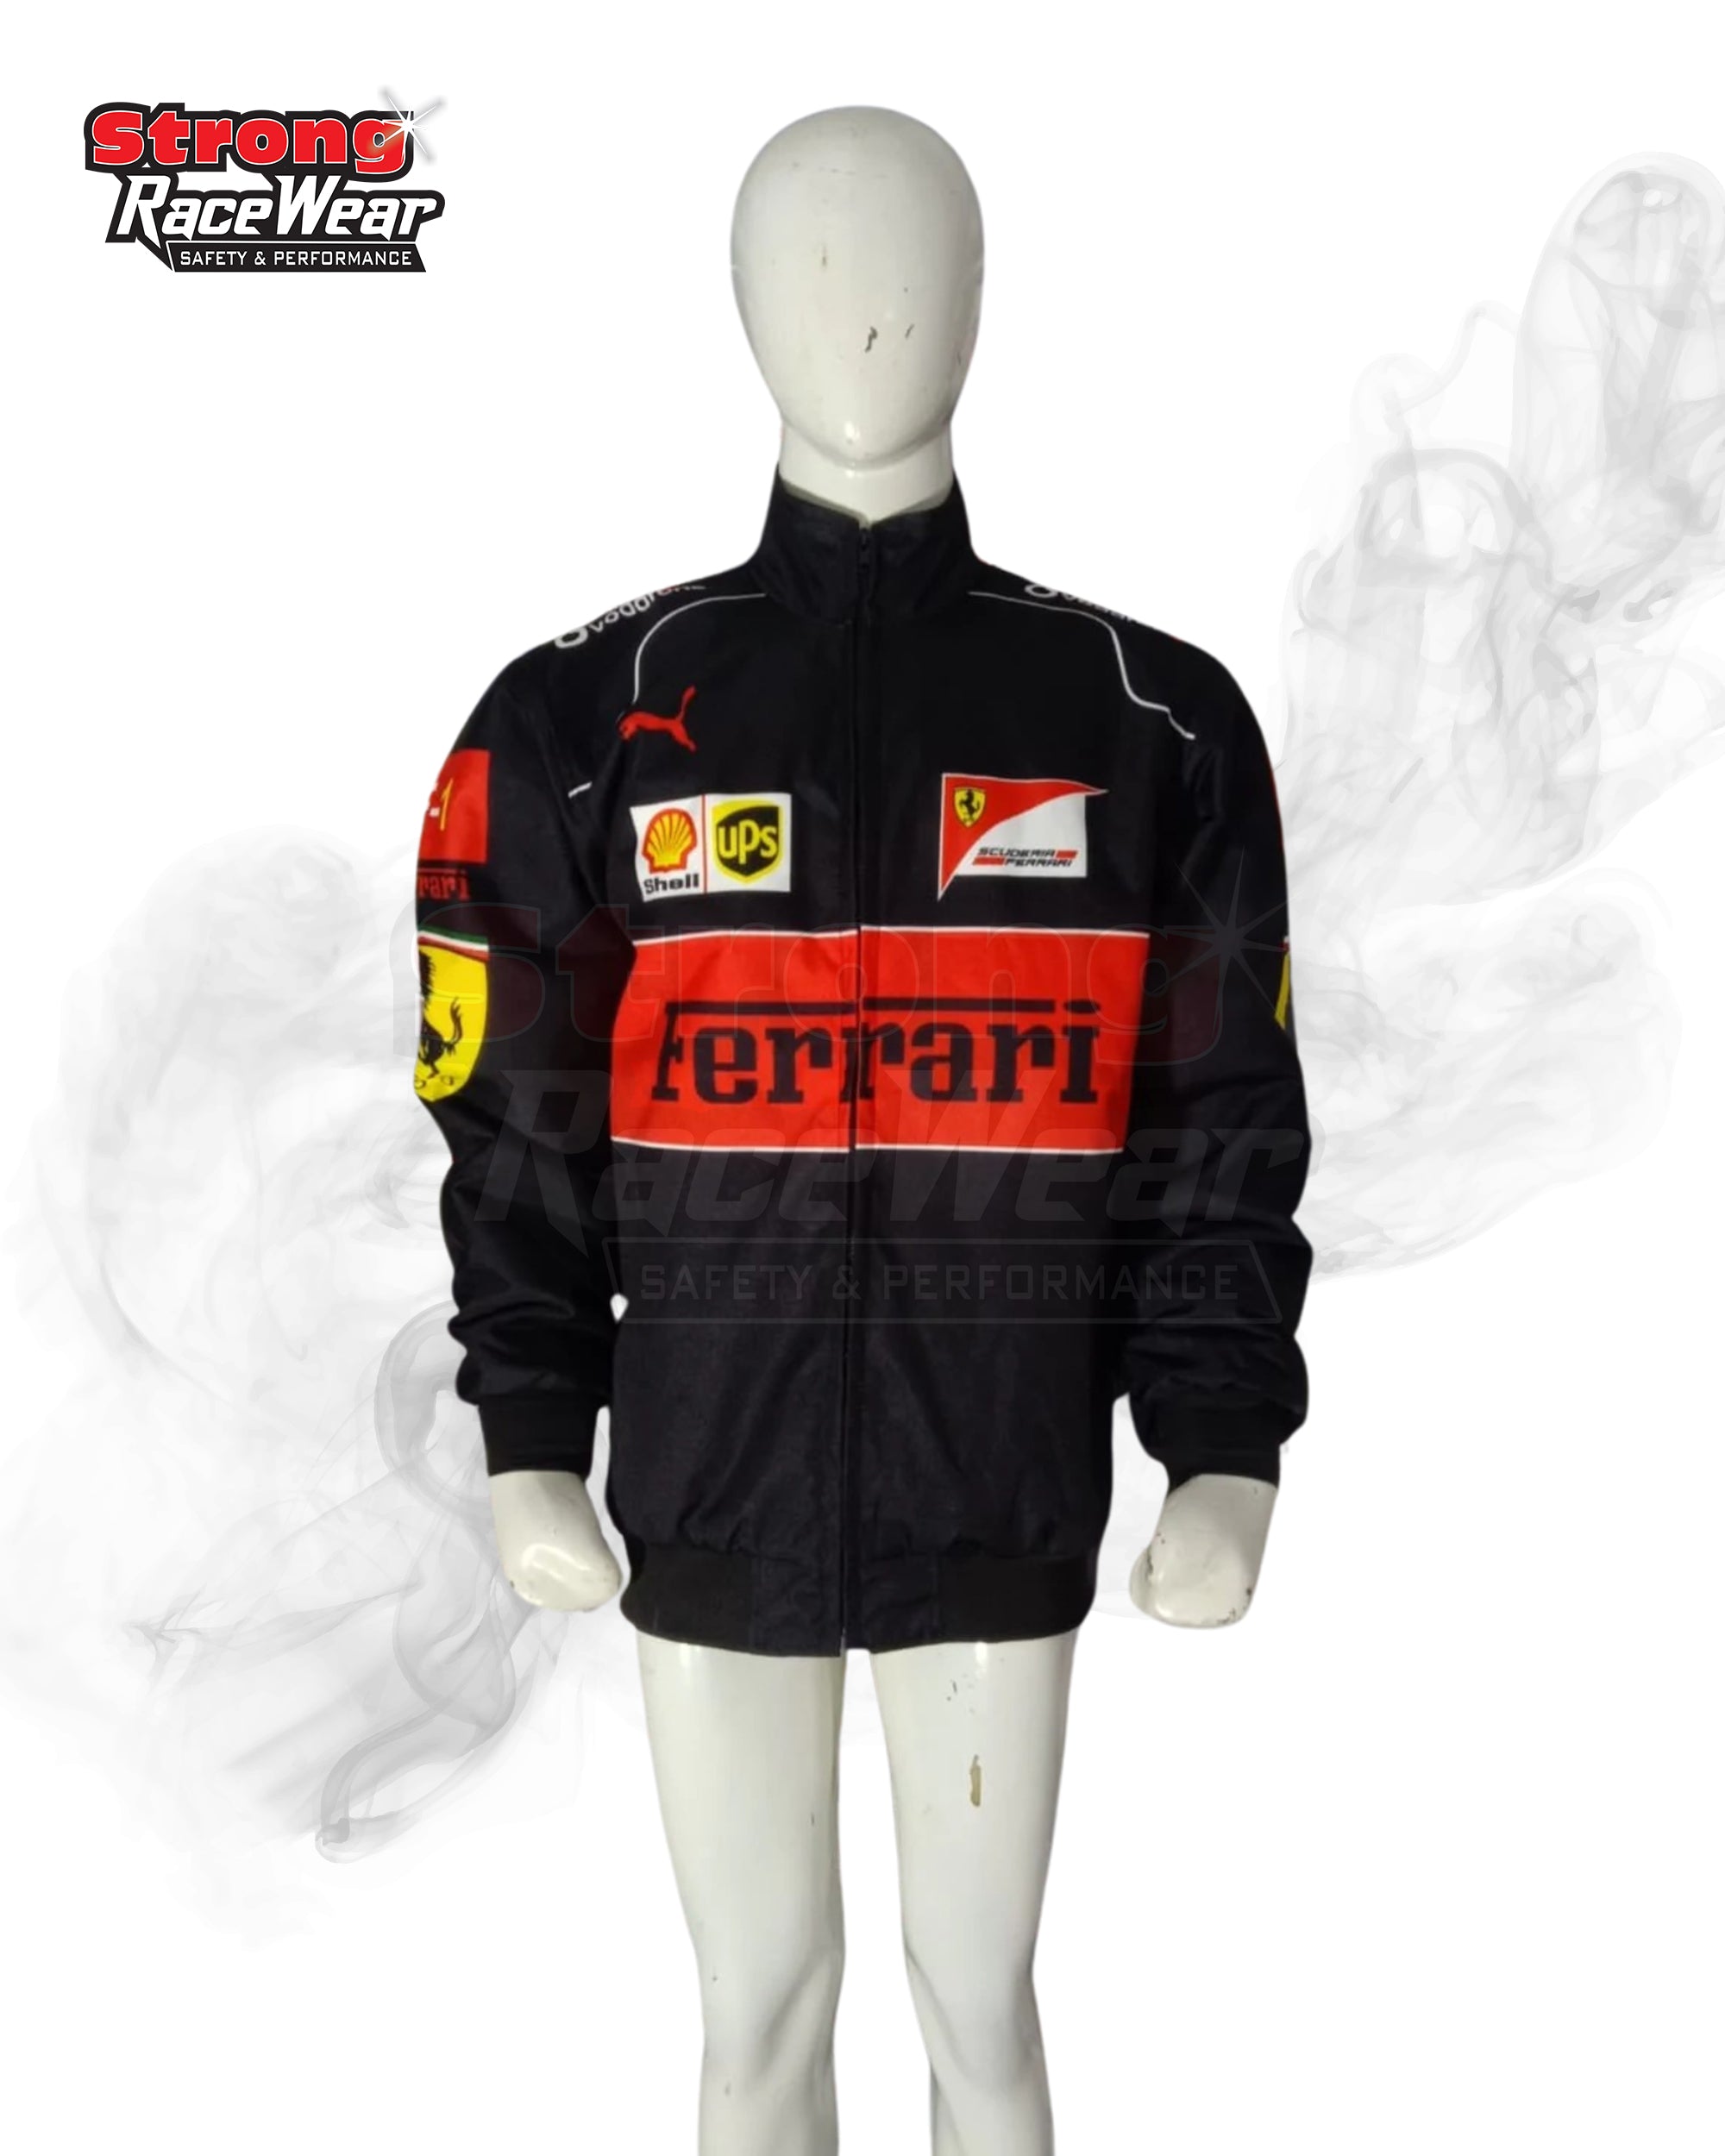 Black Ferrari Vantage Jacket Sublimation Printed